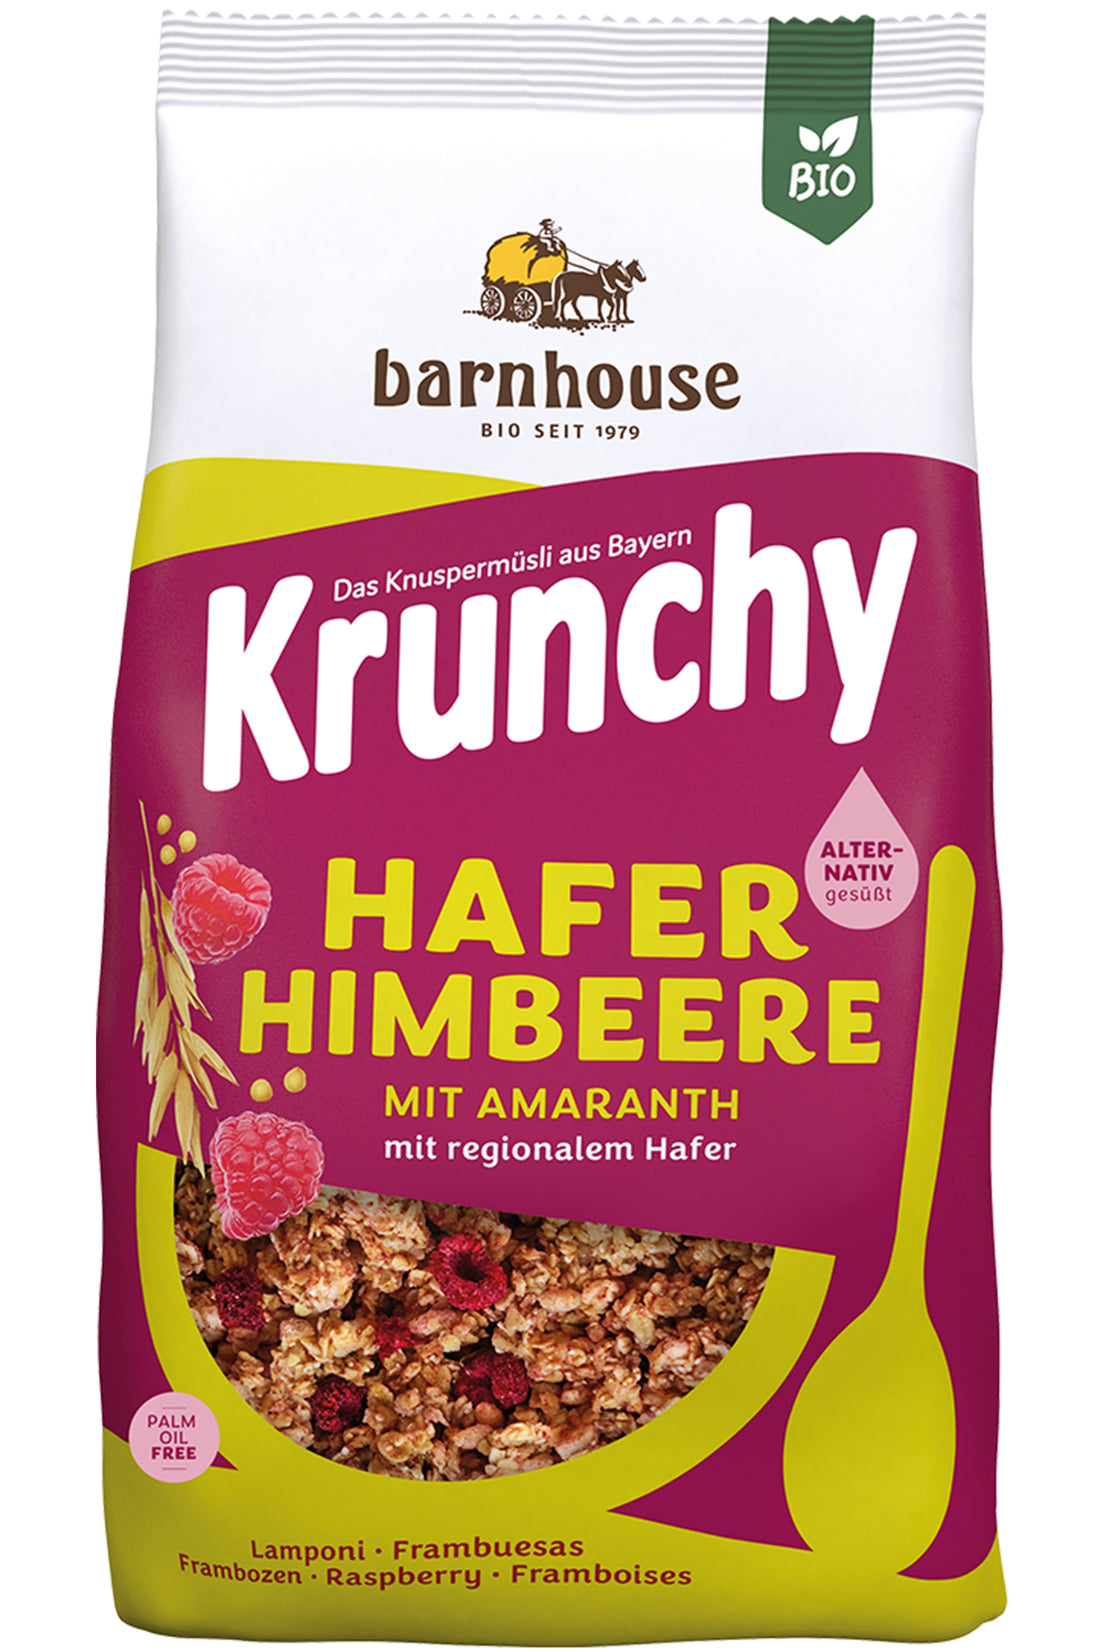 Krunchy Hafer-Himbeere mit Amaranth